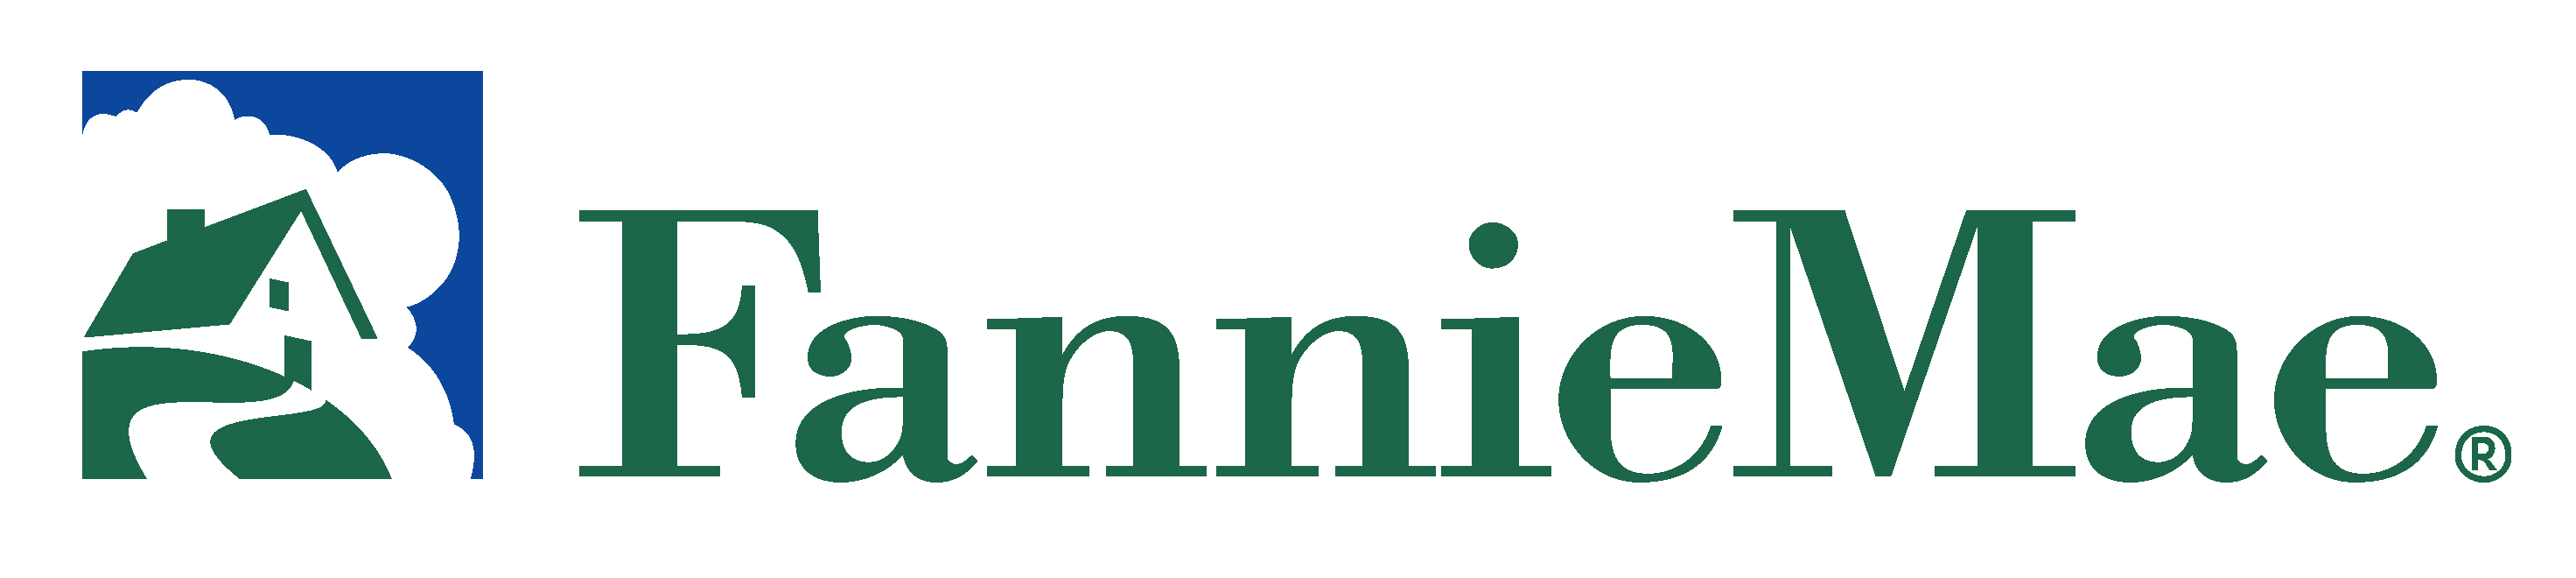 Fanniemae Logo